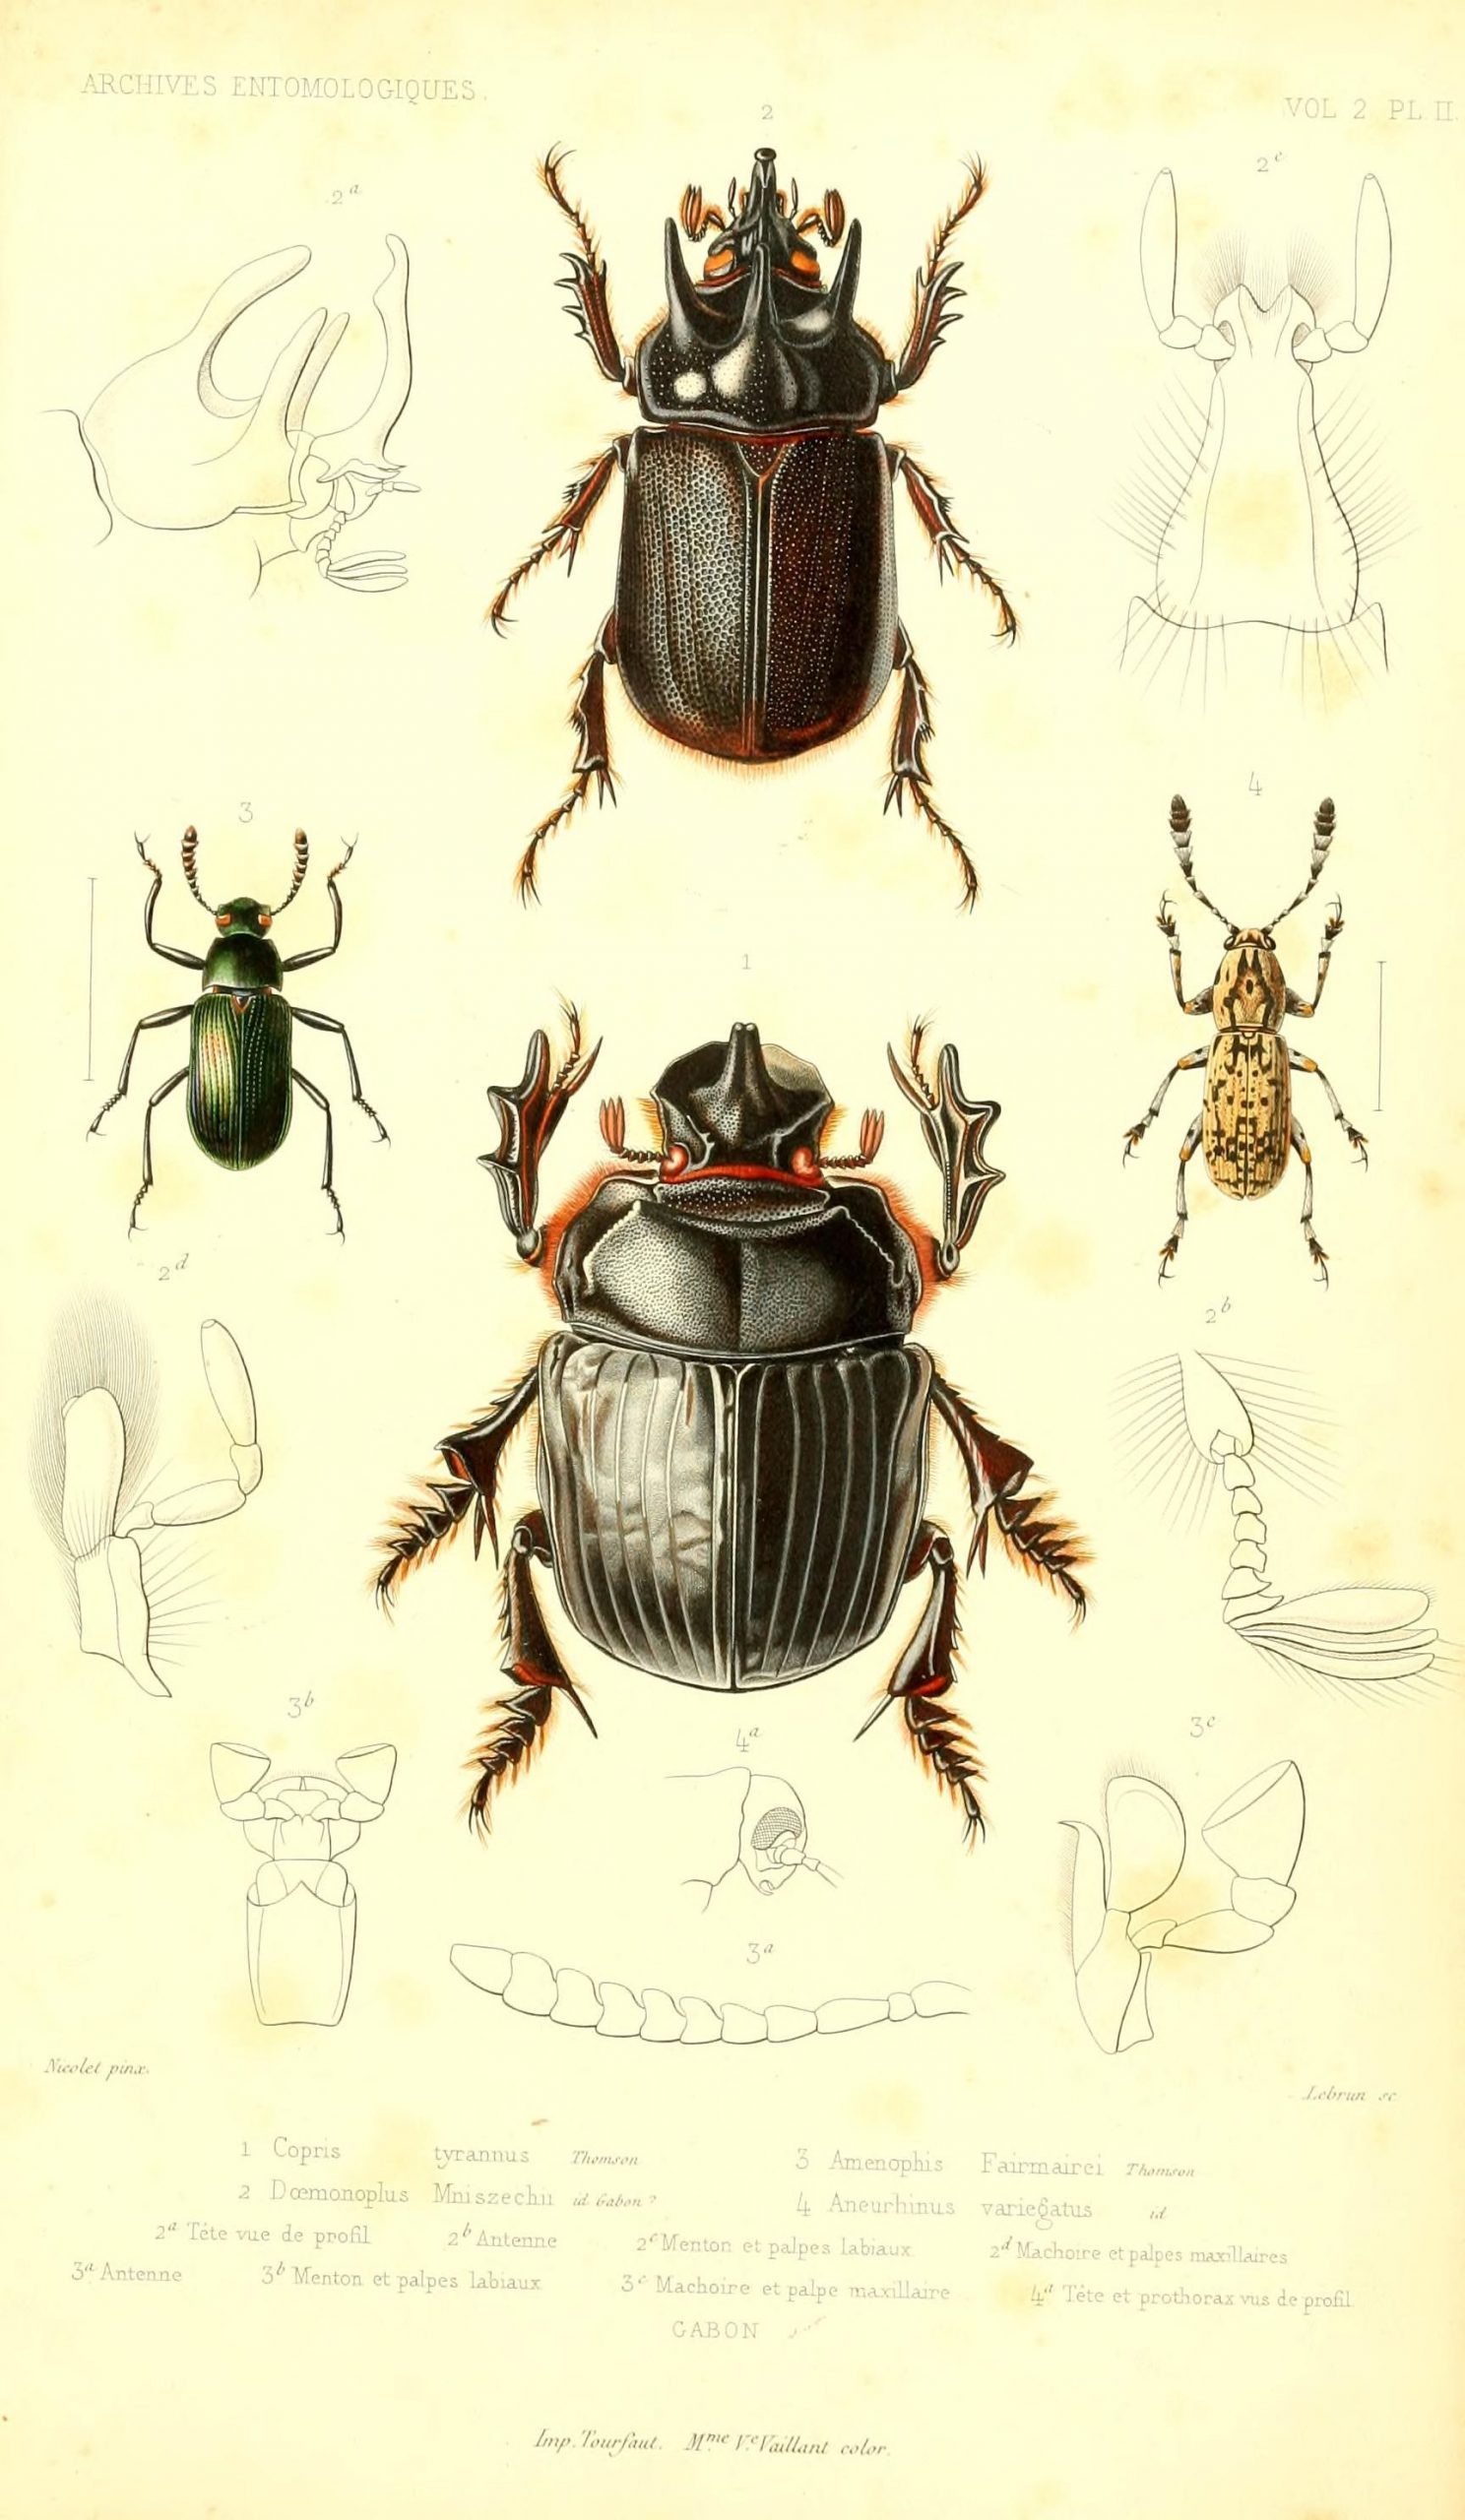 Archives Entomologiques, Ou, Recueil Contenant Des Illustrations D dedans Dessin D Insectes